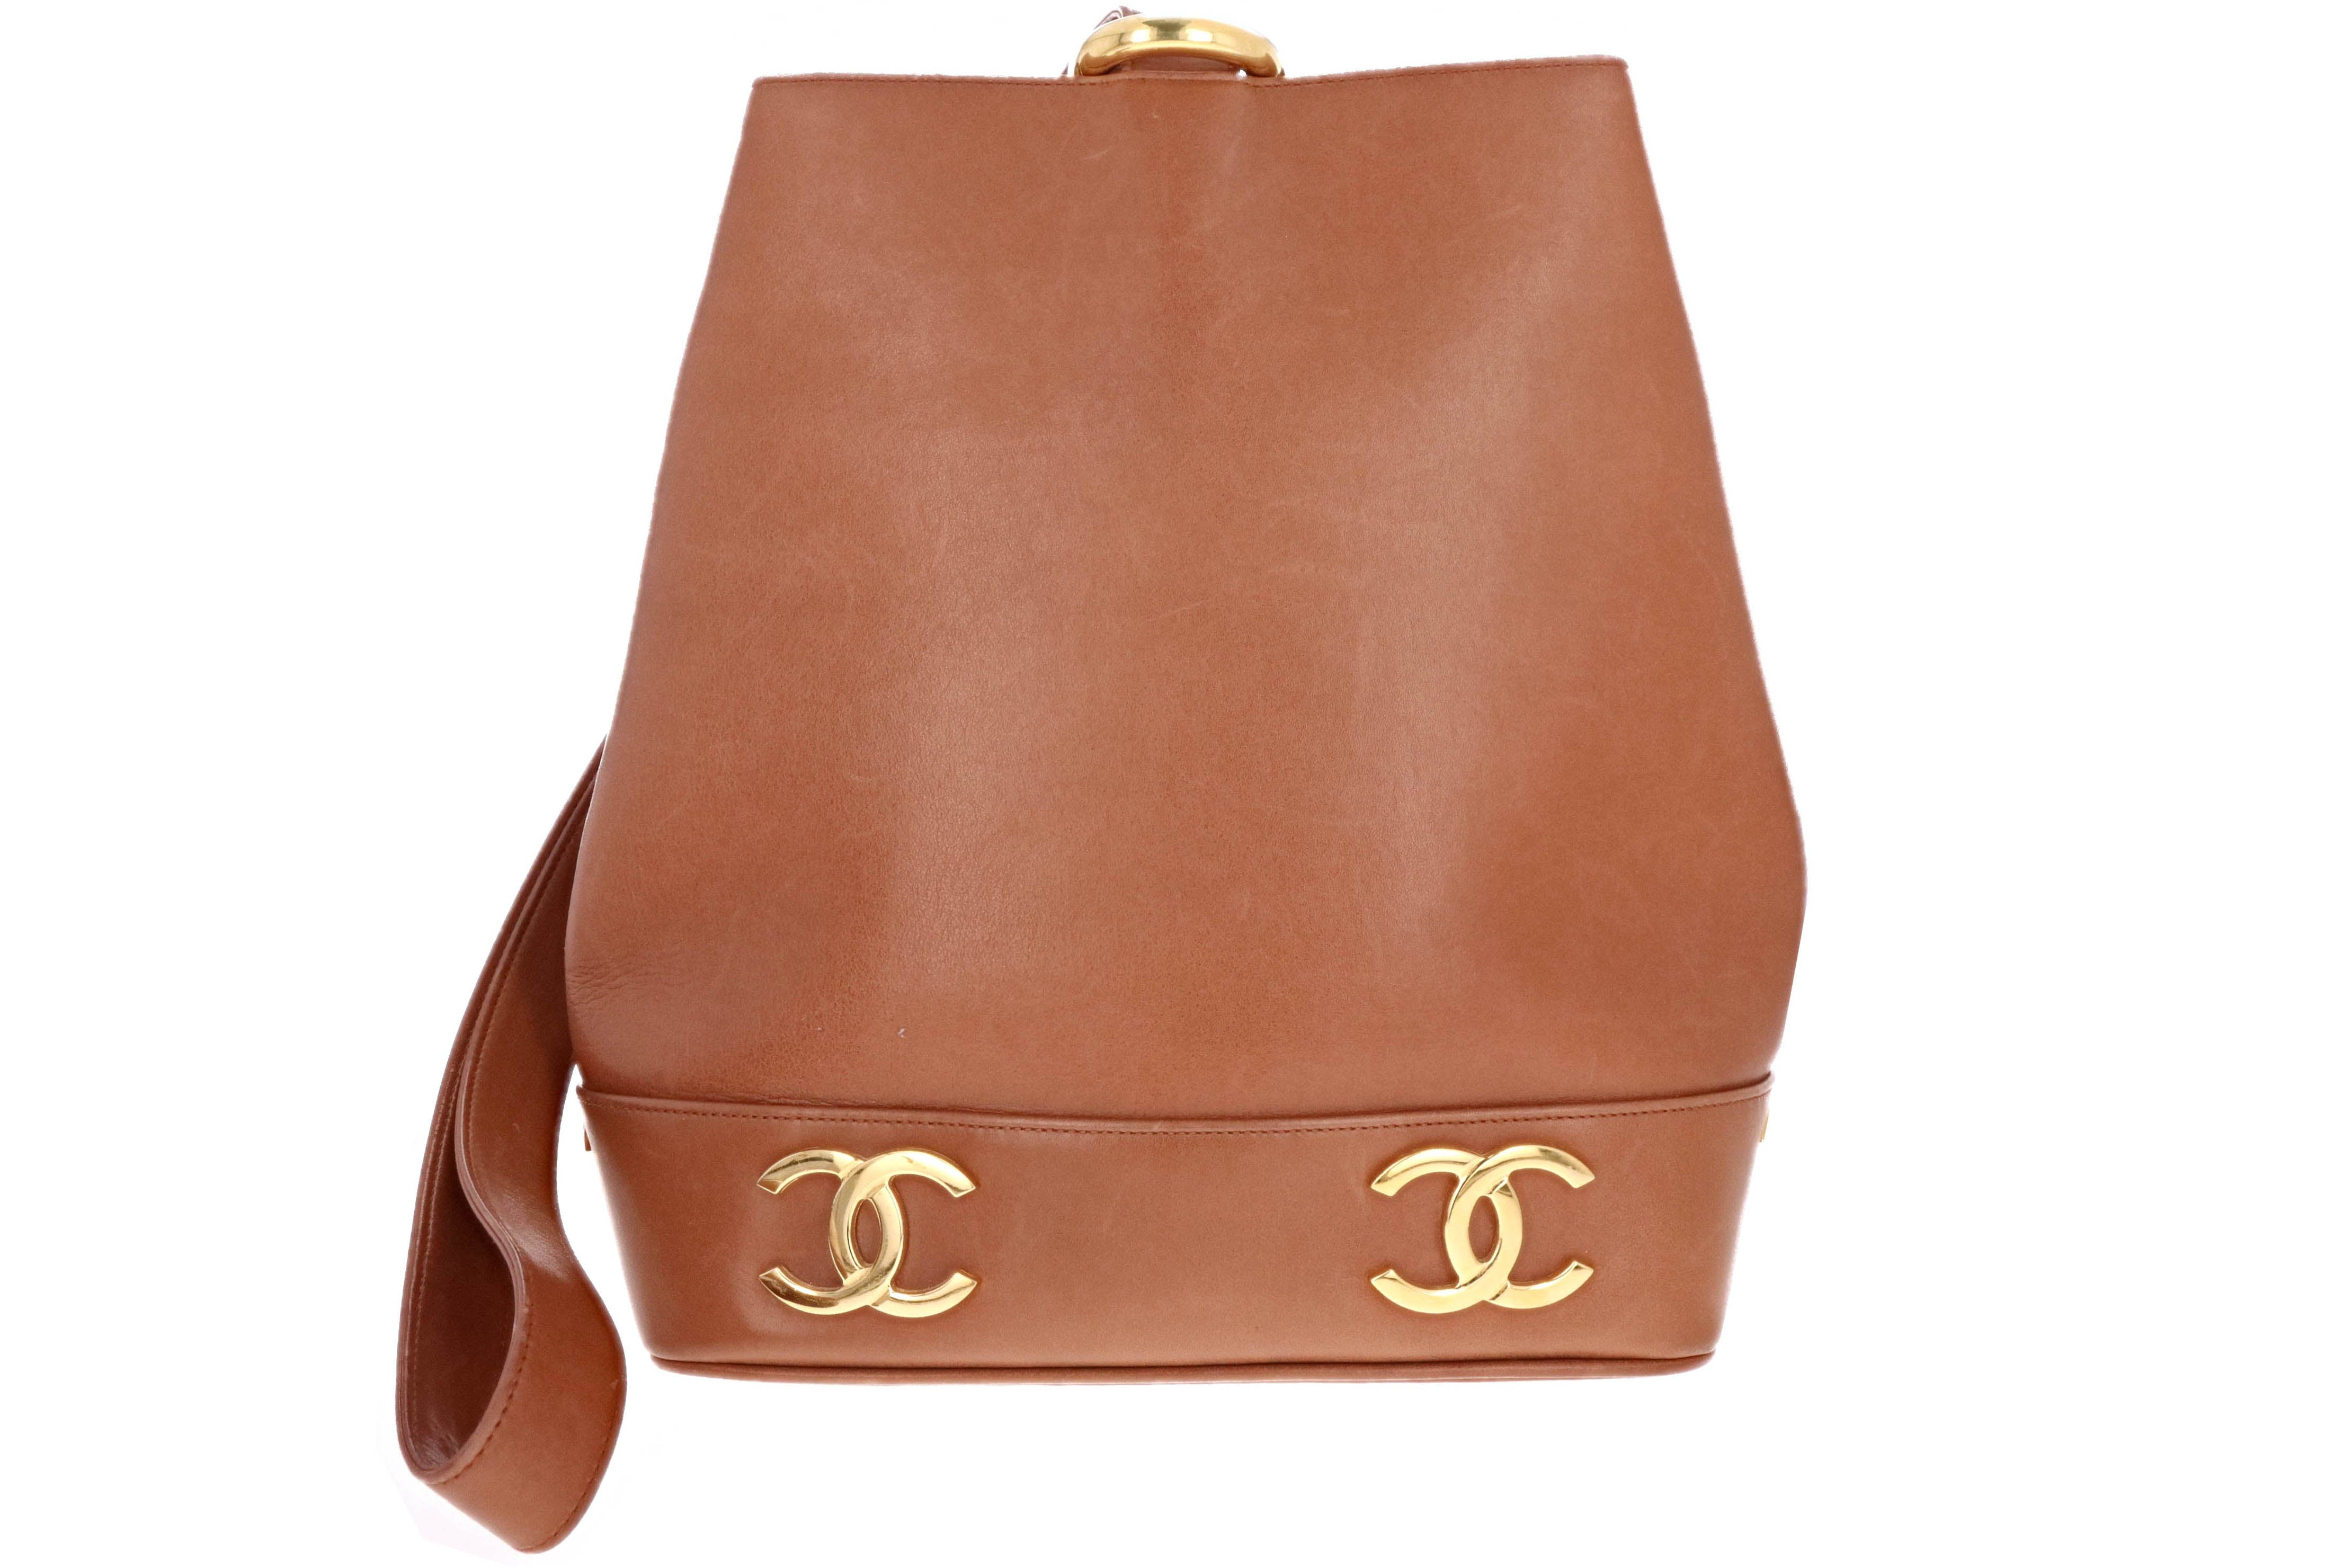 Vintage Chanel Bucket Bag - 25 For Sale on 1stDibs